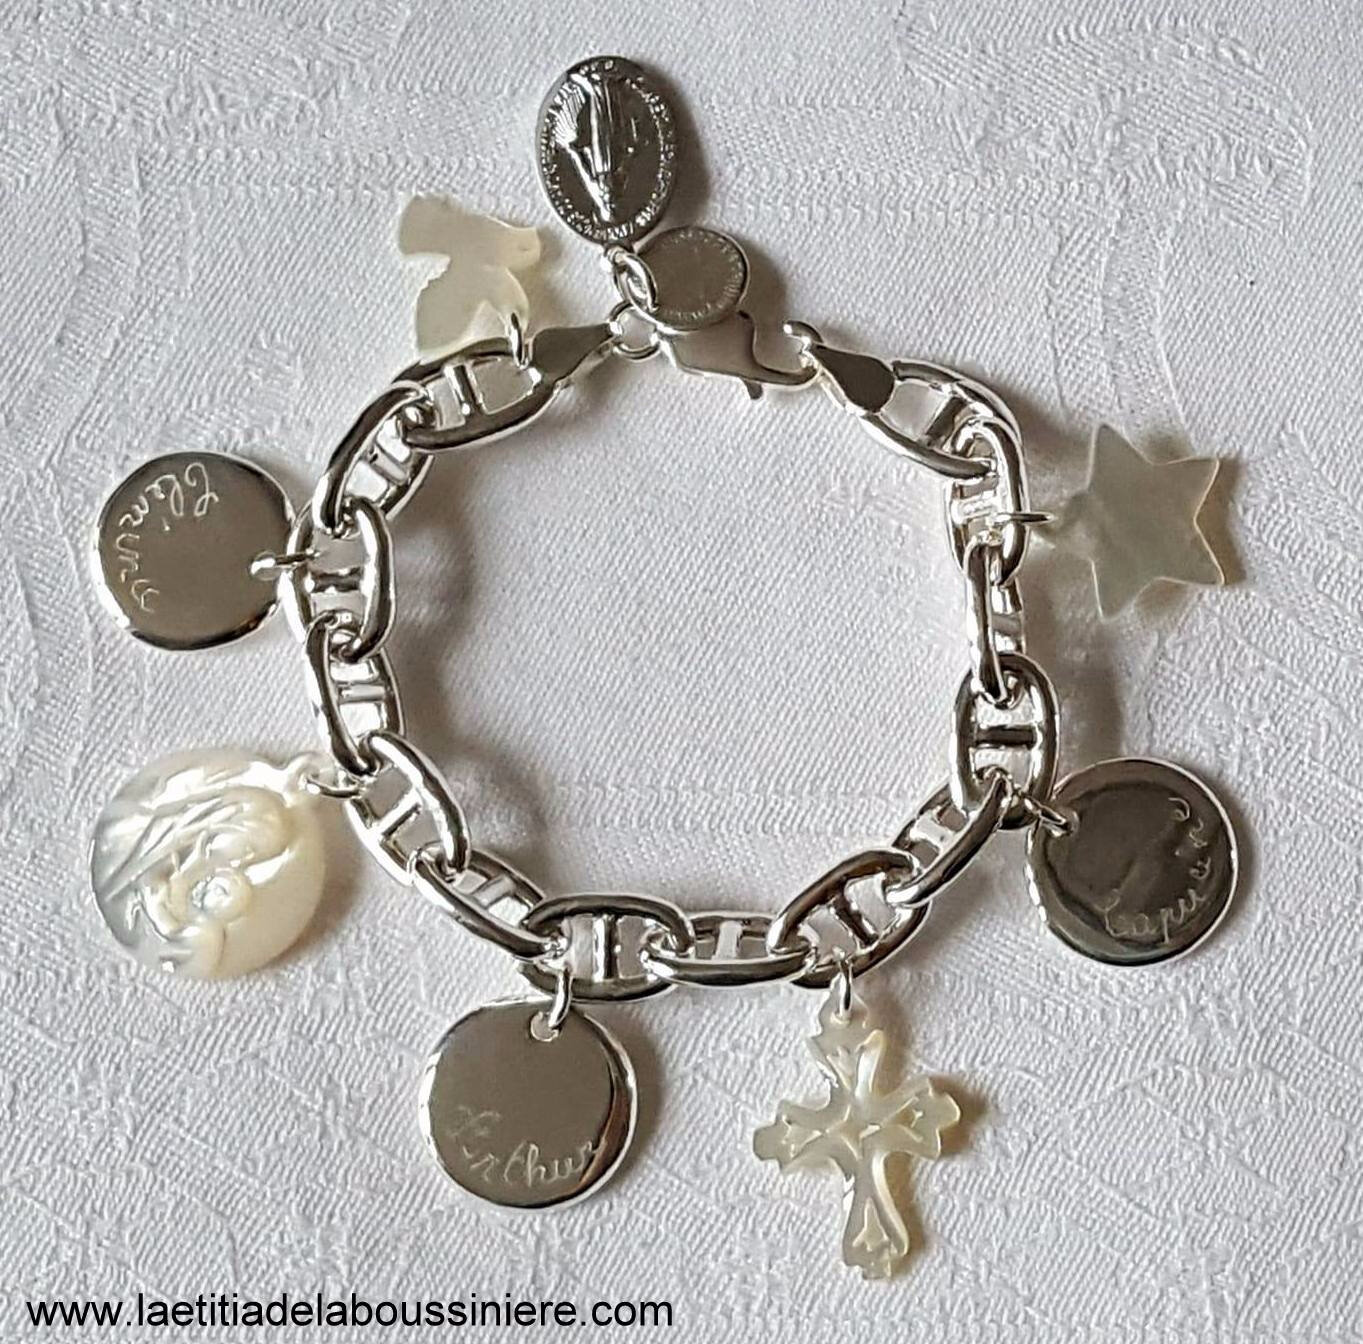 Bracelet sur chaîne argent massif mailles marine composé de 3 médailles en argent massif gravées et de pendentifs en nacre